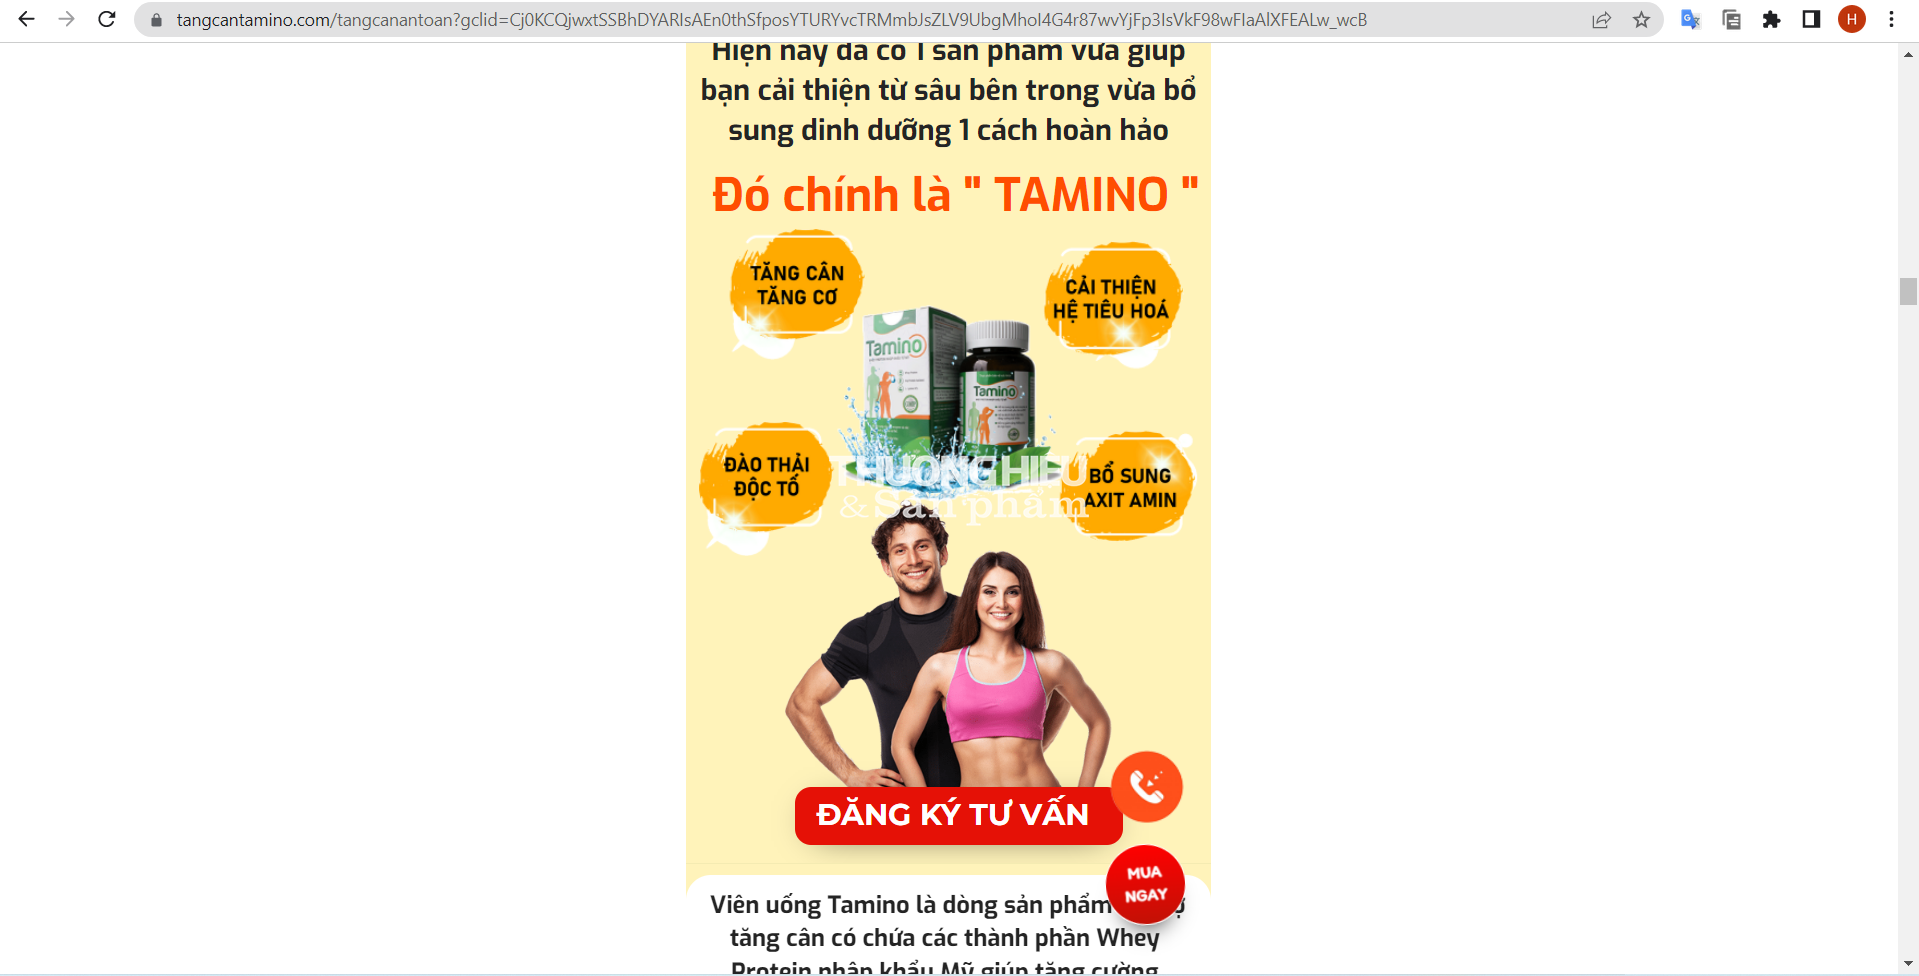 Thực phẩm bảo vệ sức khỏe Tamino có đang "nổ" công dụng như thuốc chữa bệnh, lừa dối người tiêu dùng